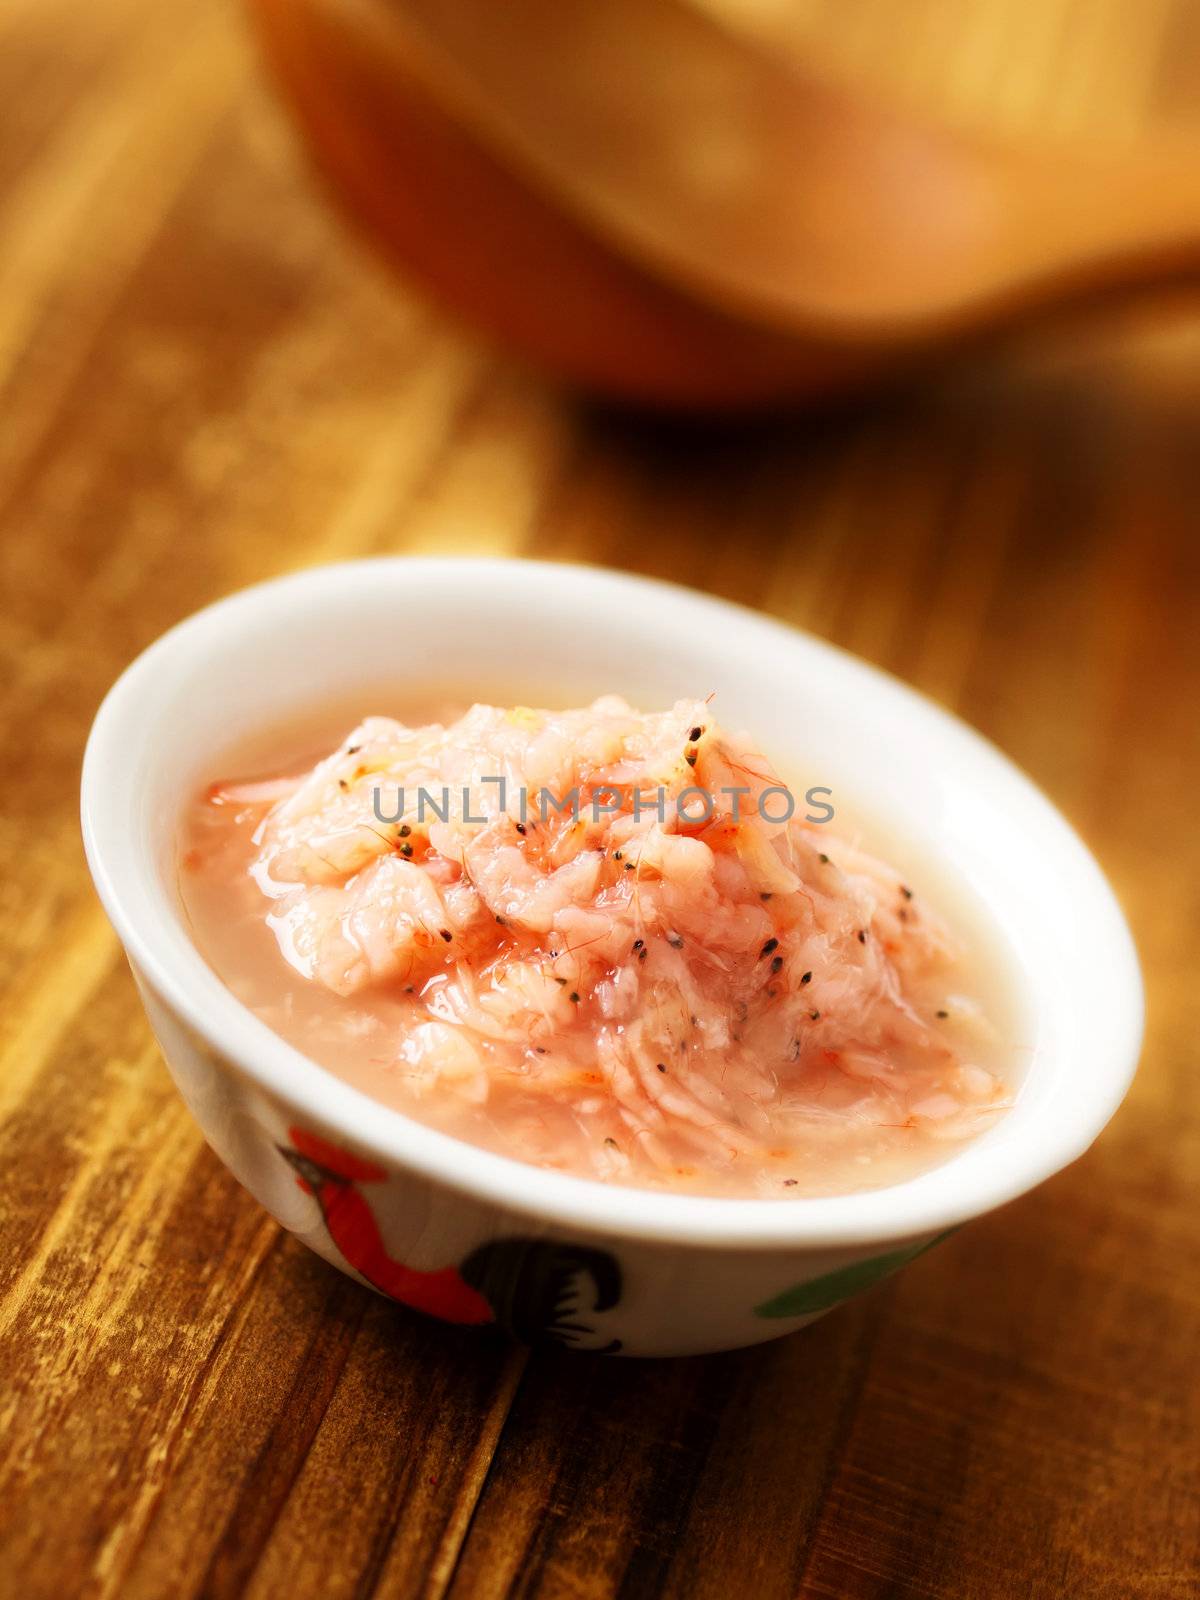 fermented shrimps by zkruger